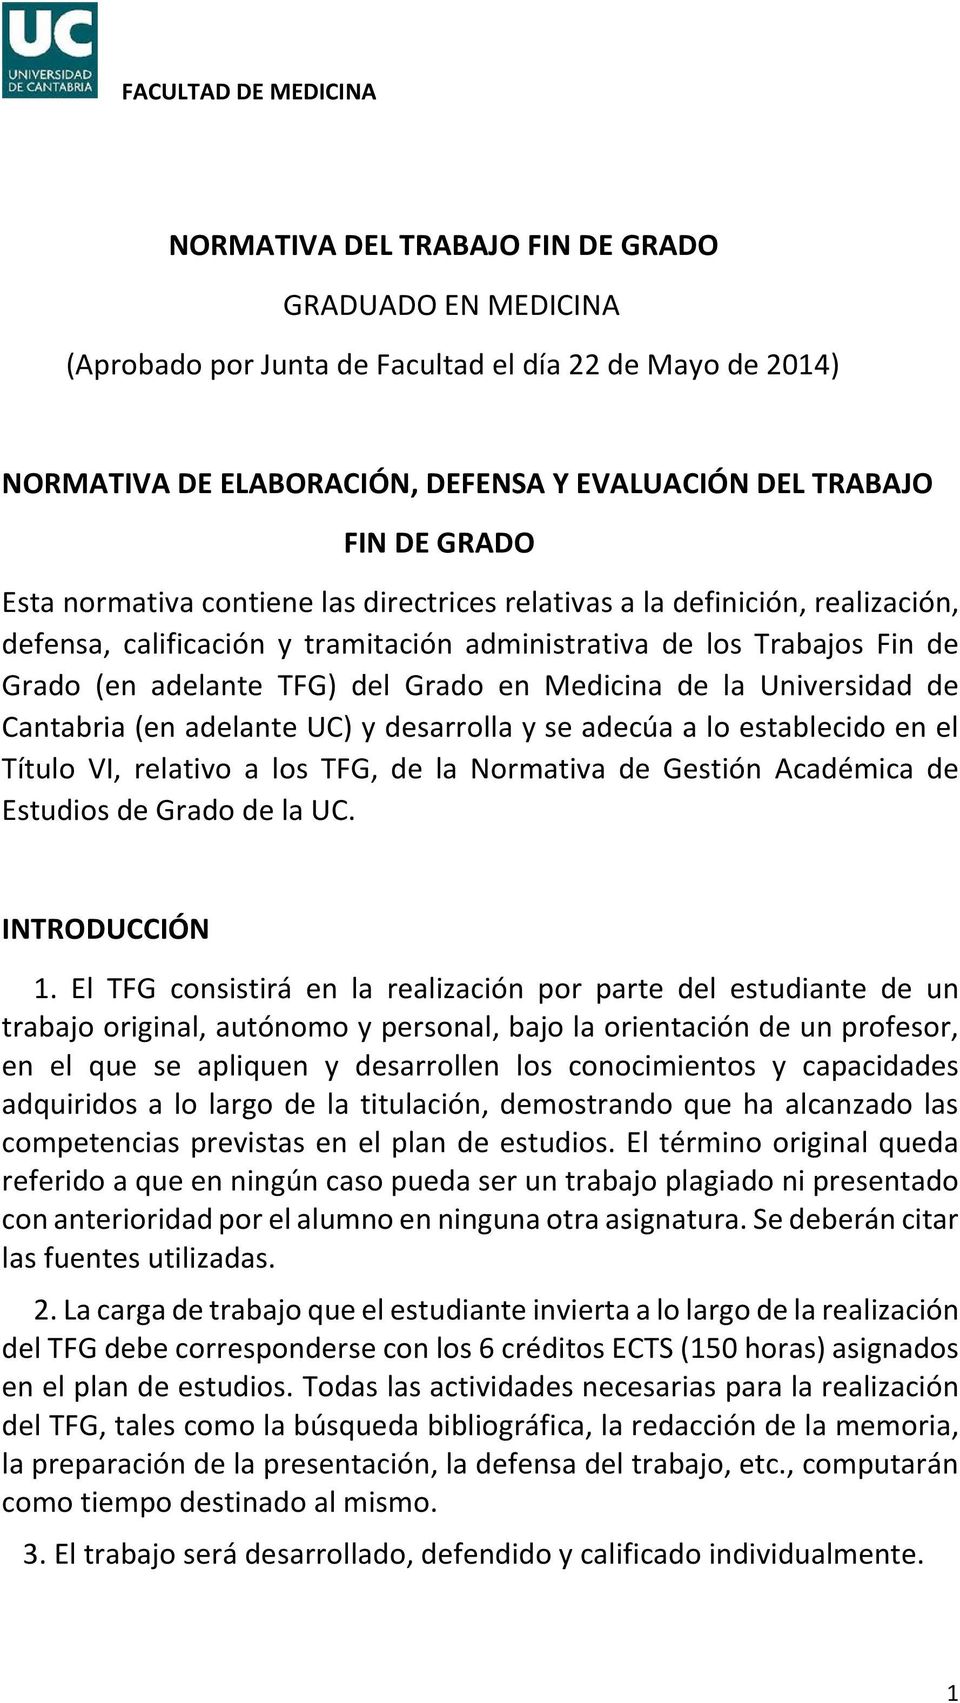 la Universidad de Cantabria (en adelante UC) y desarrolla y se adecúa a lo establecido en el Título VI, relativo a los TFG, de la Normativa de Gestión Académica de Estudios de Grado de la UC.